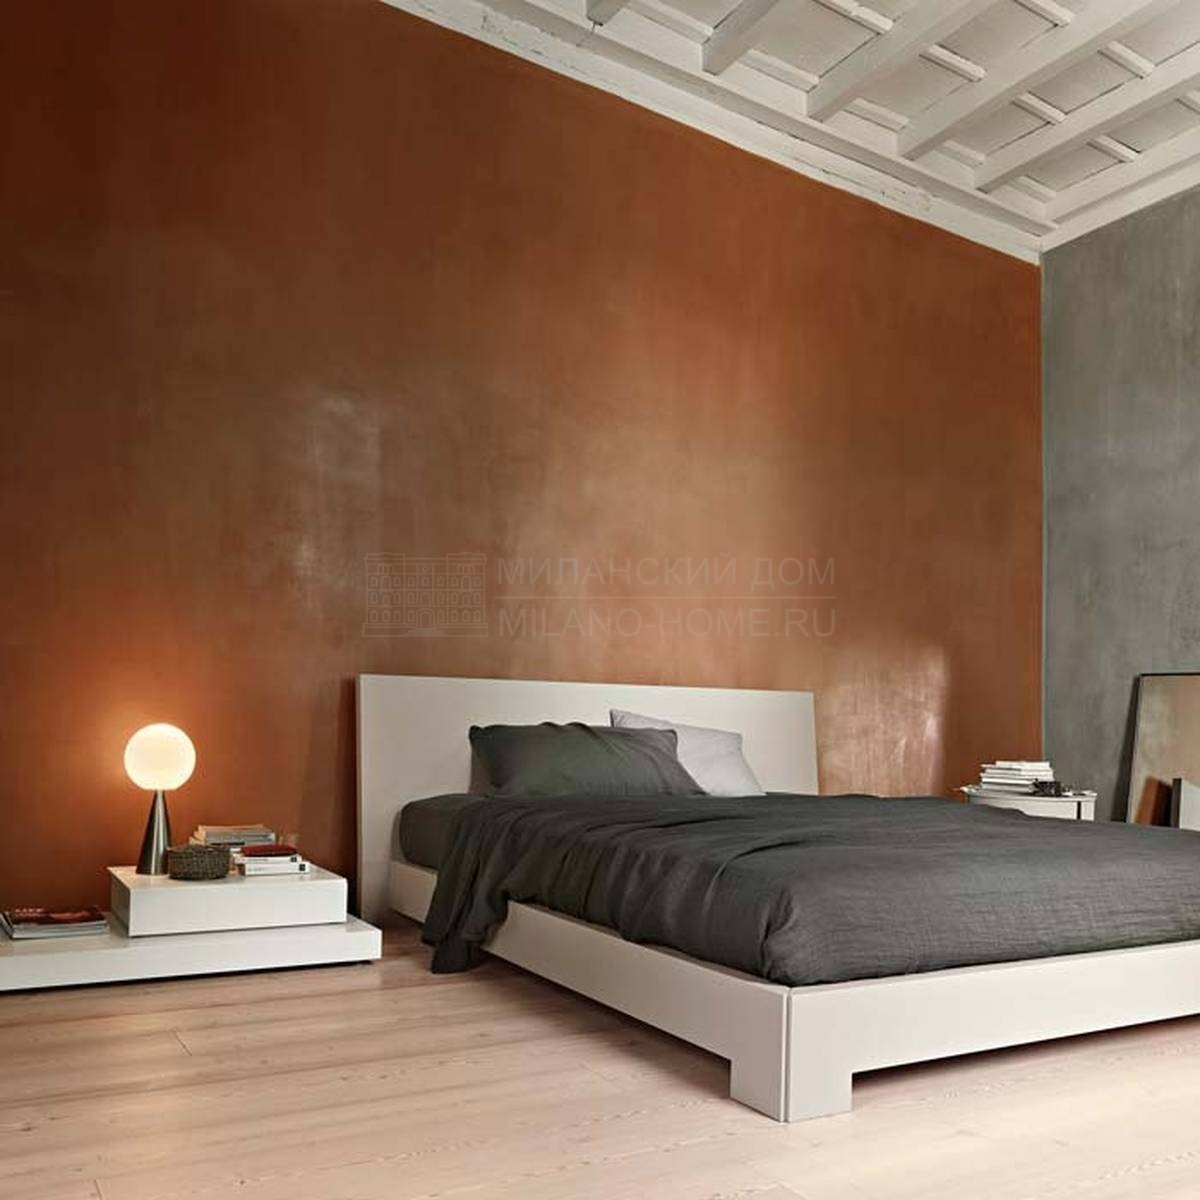 Кровать с деревянным изголовьем Quaranta/bed из Италии фабрики LEMA